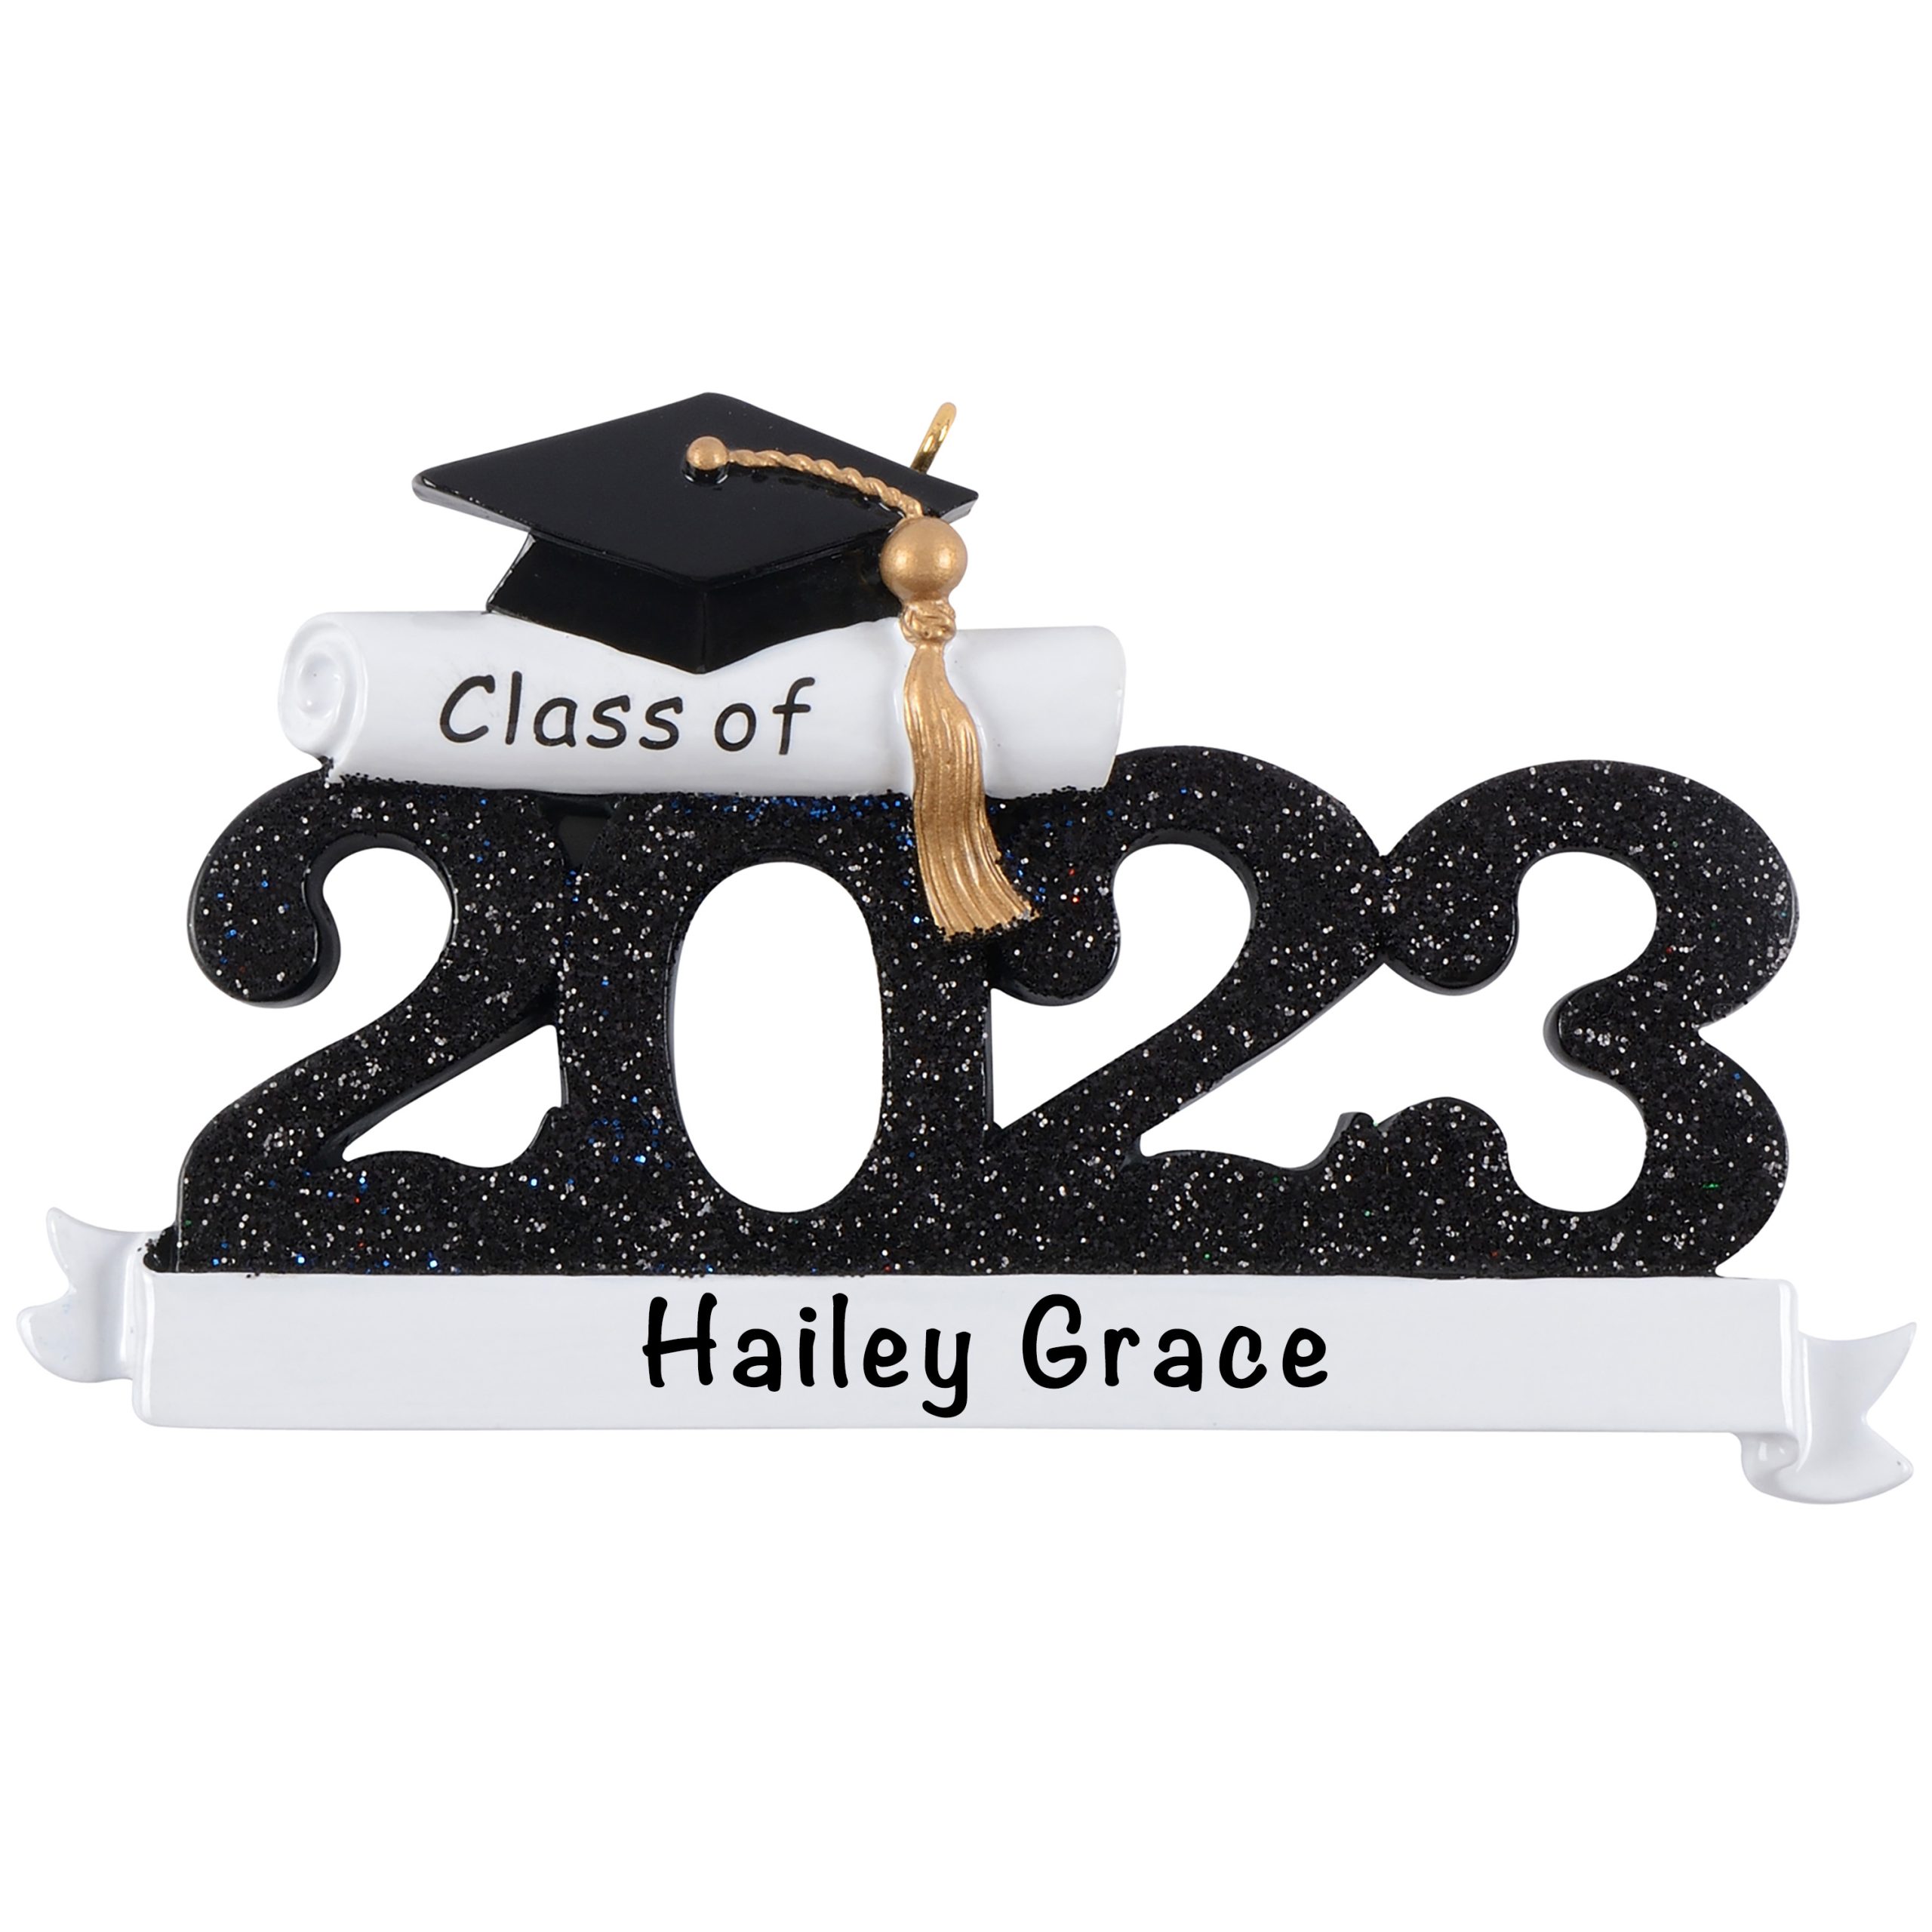 2023 Graduations